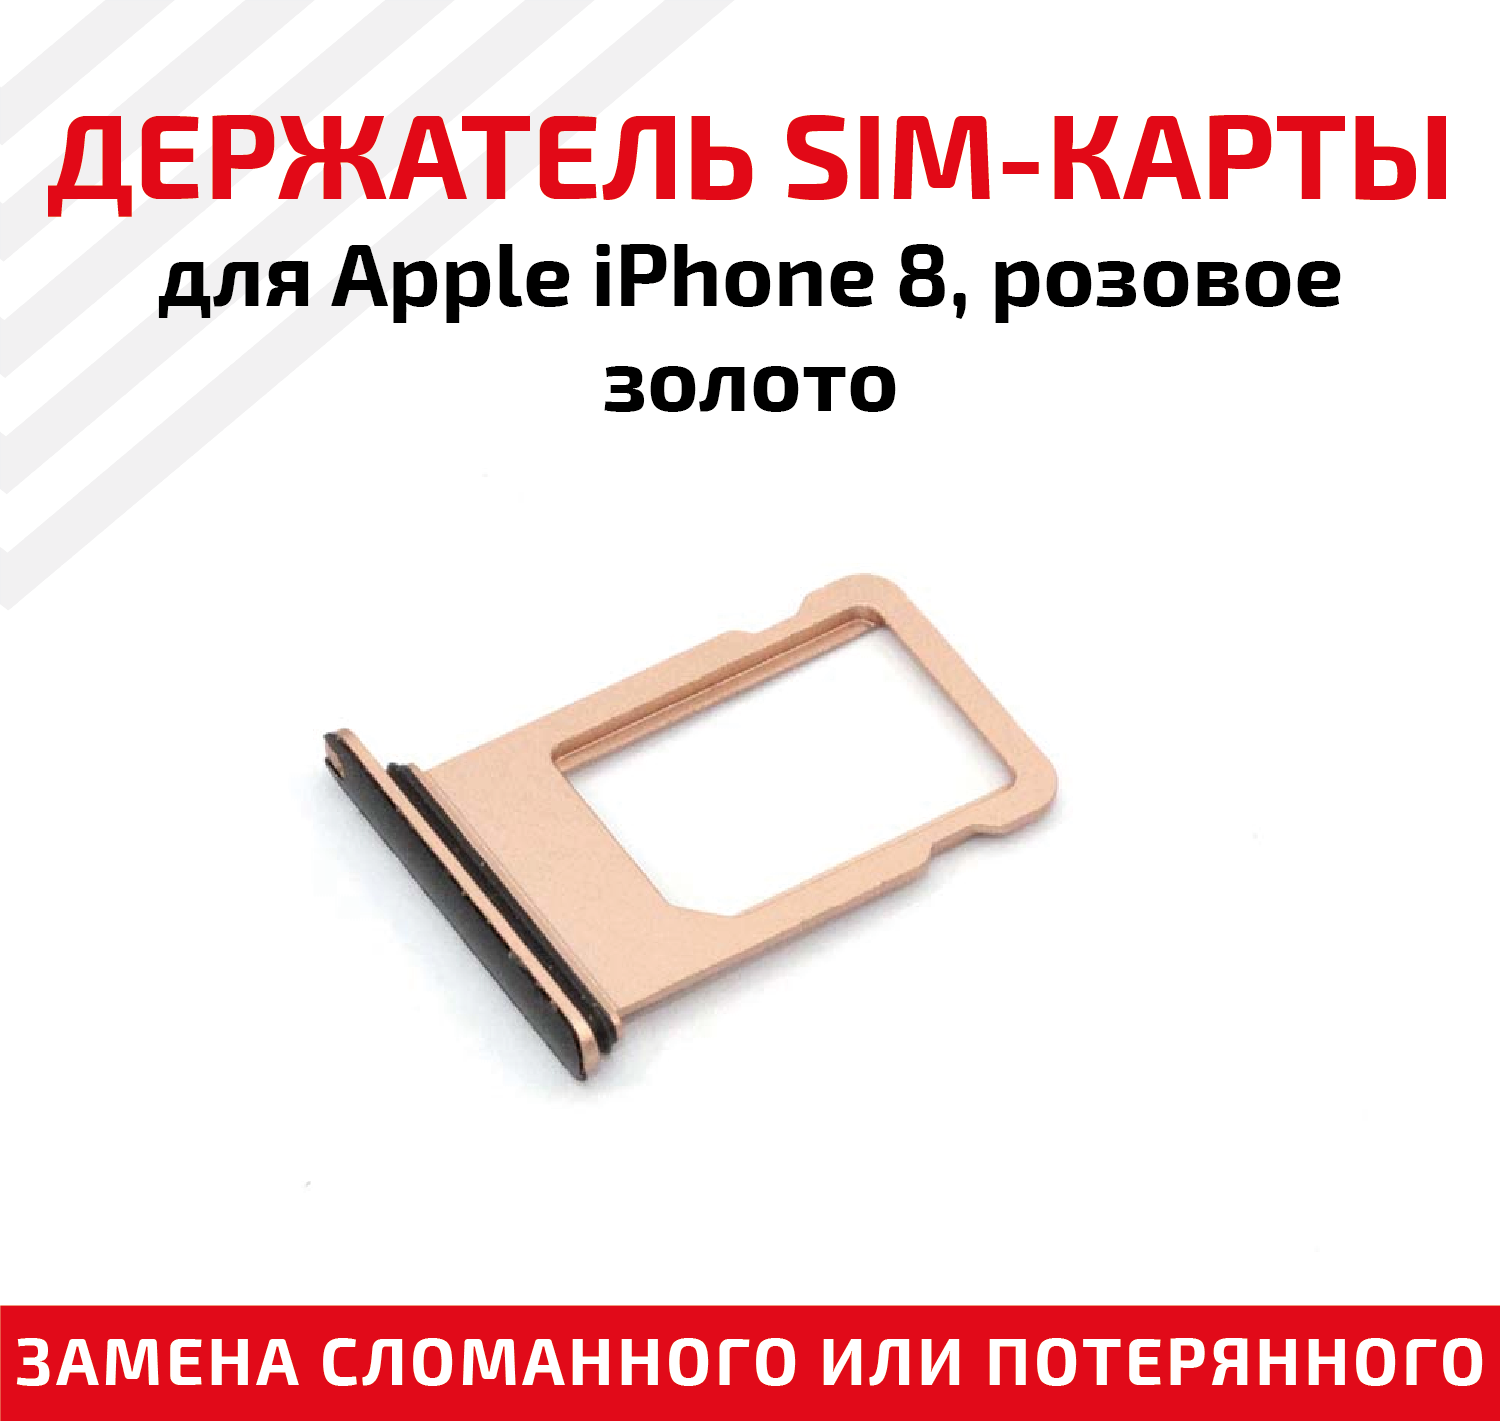 Держатель (лоток) SIM карты для Apple iPhone 8 розовое золото